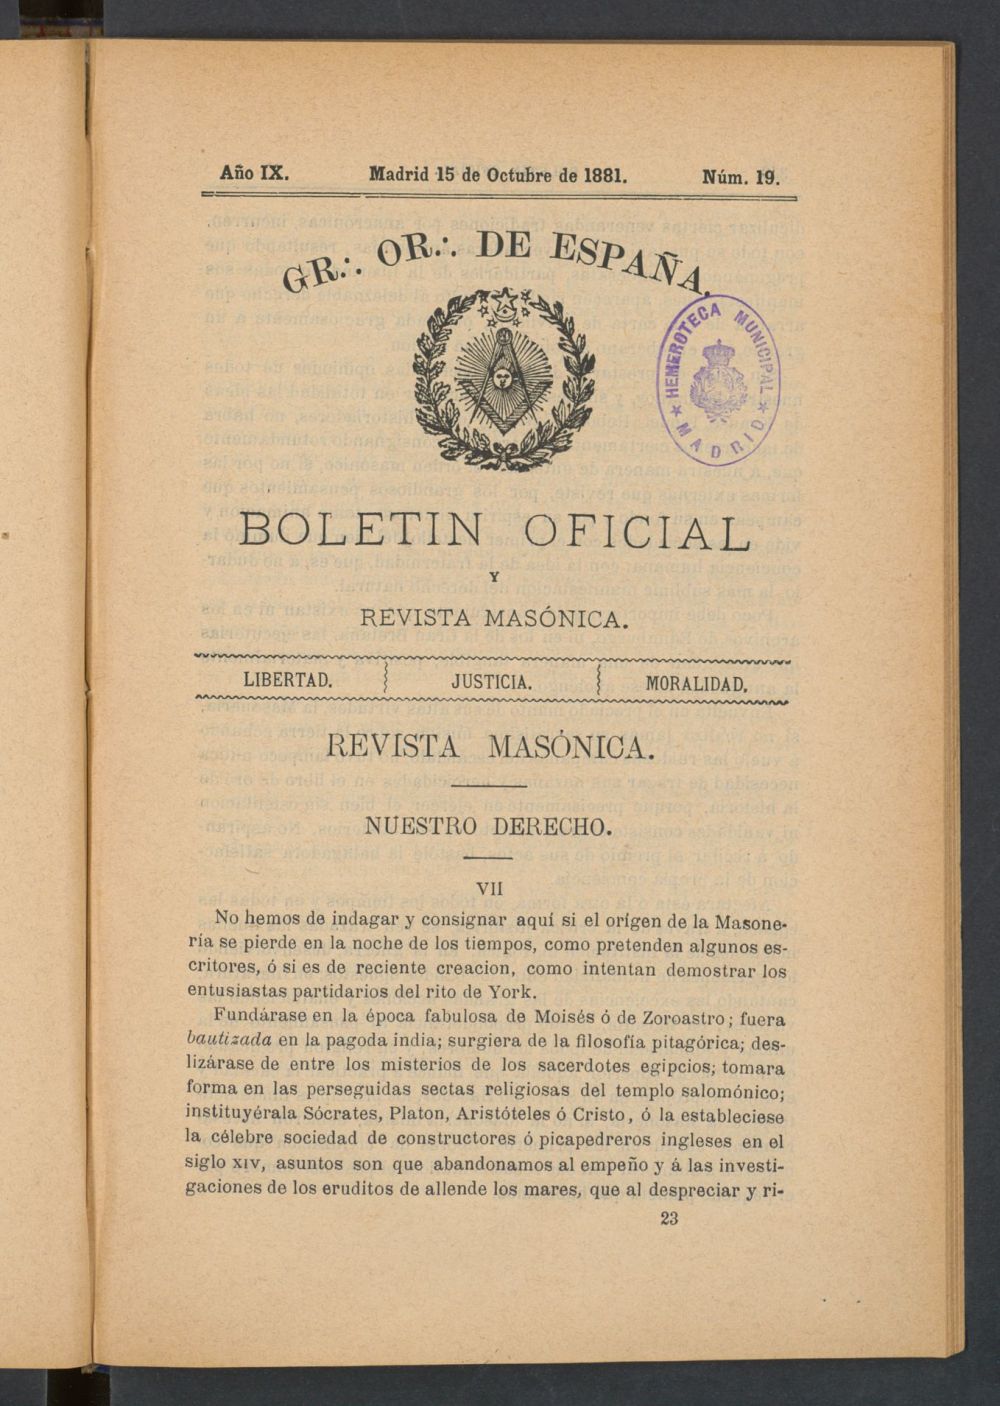 Boletn Oficial del Gran Oriente de Espaa del 15 de octubre de 1881. N 19